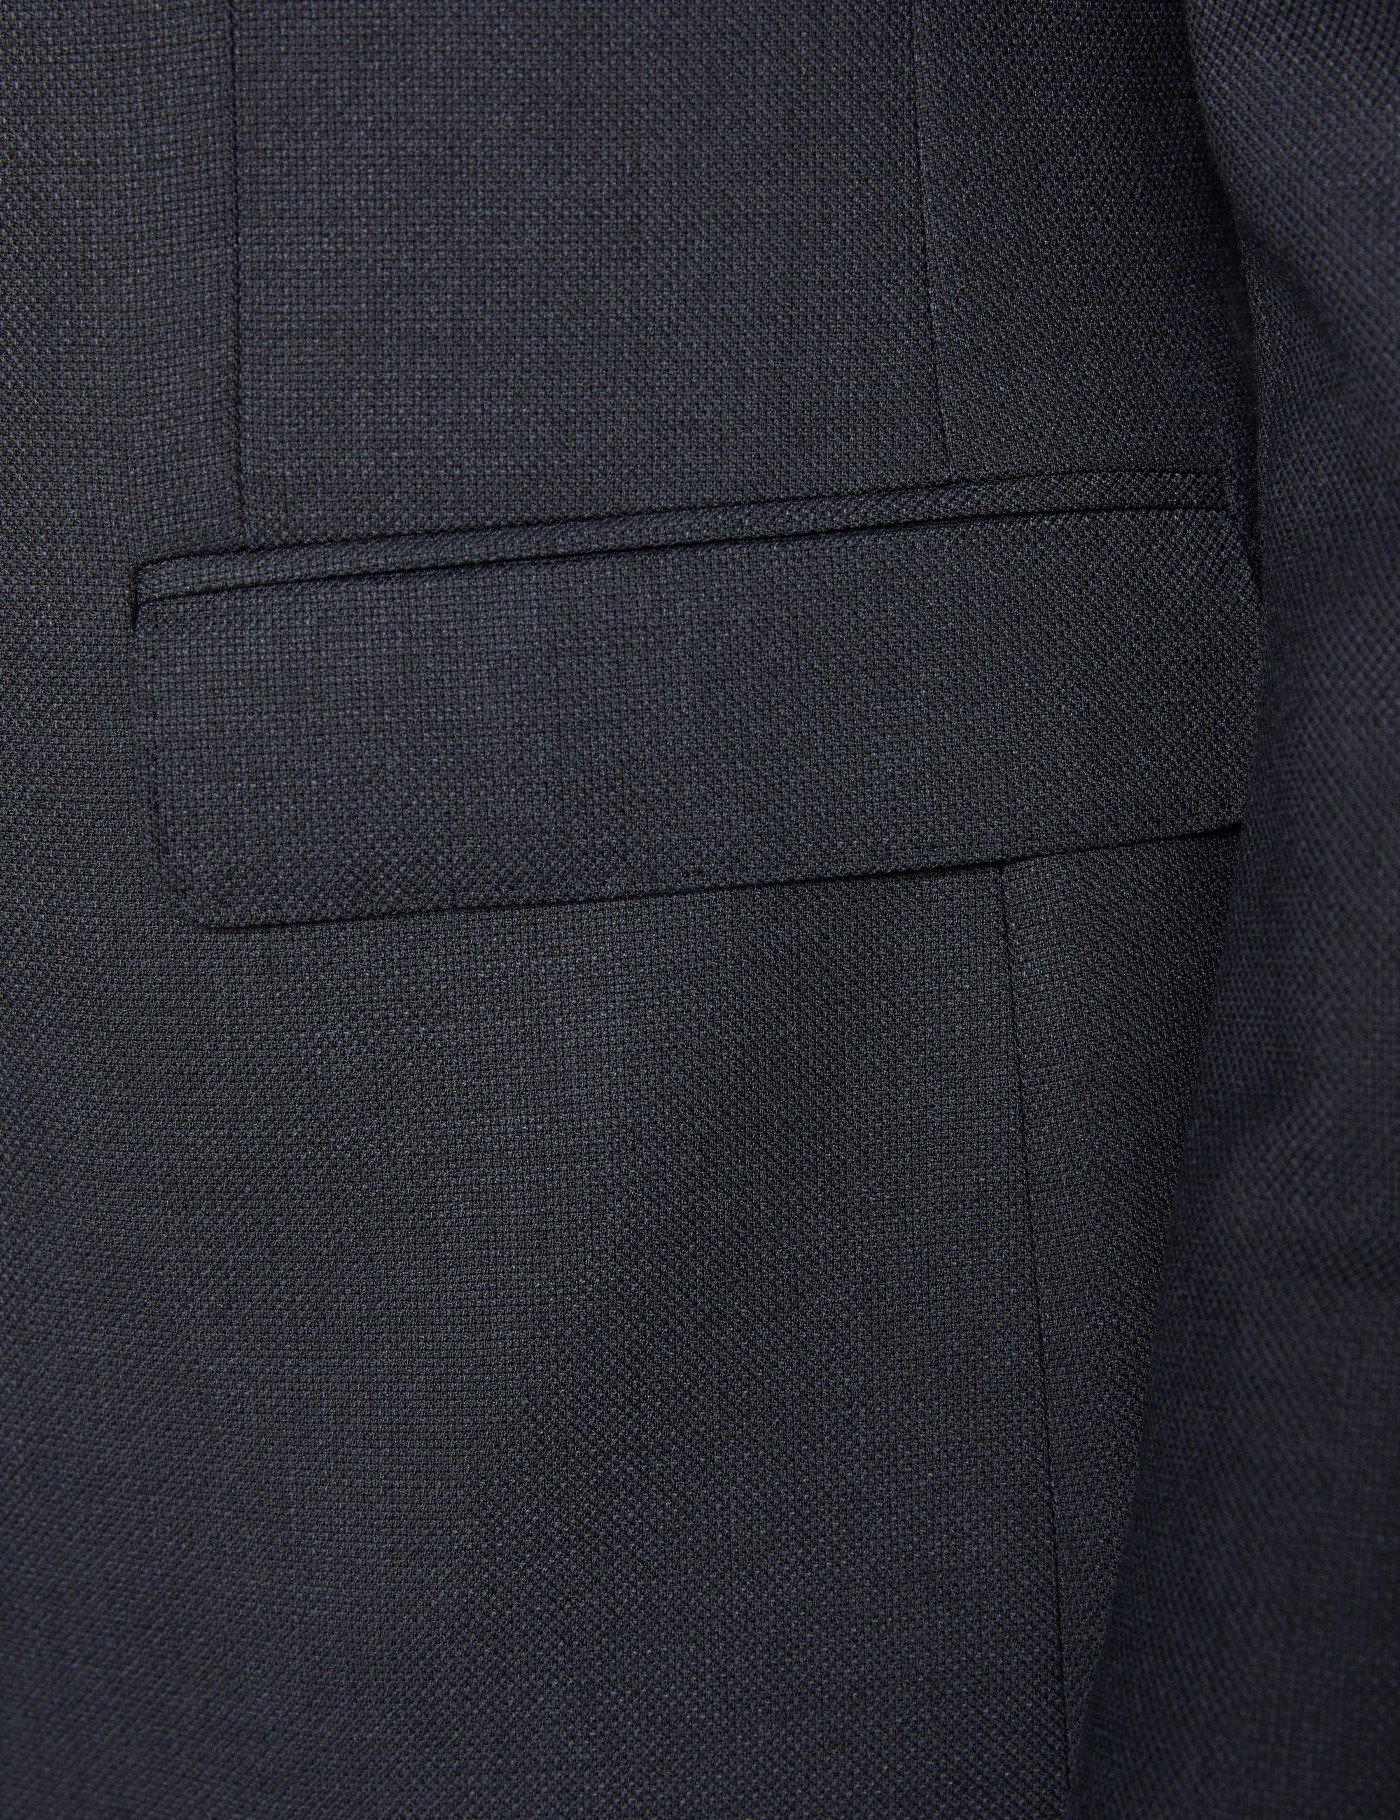 Men's Charcoal Slim Fit Travel Suit | Hawes & Curtis